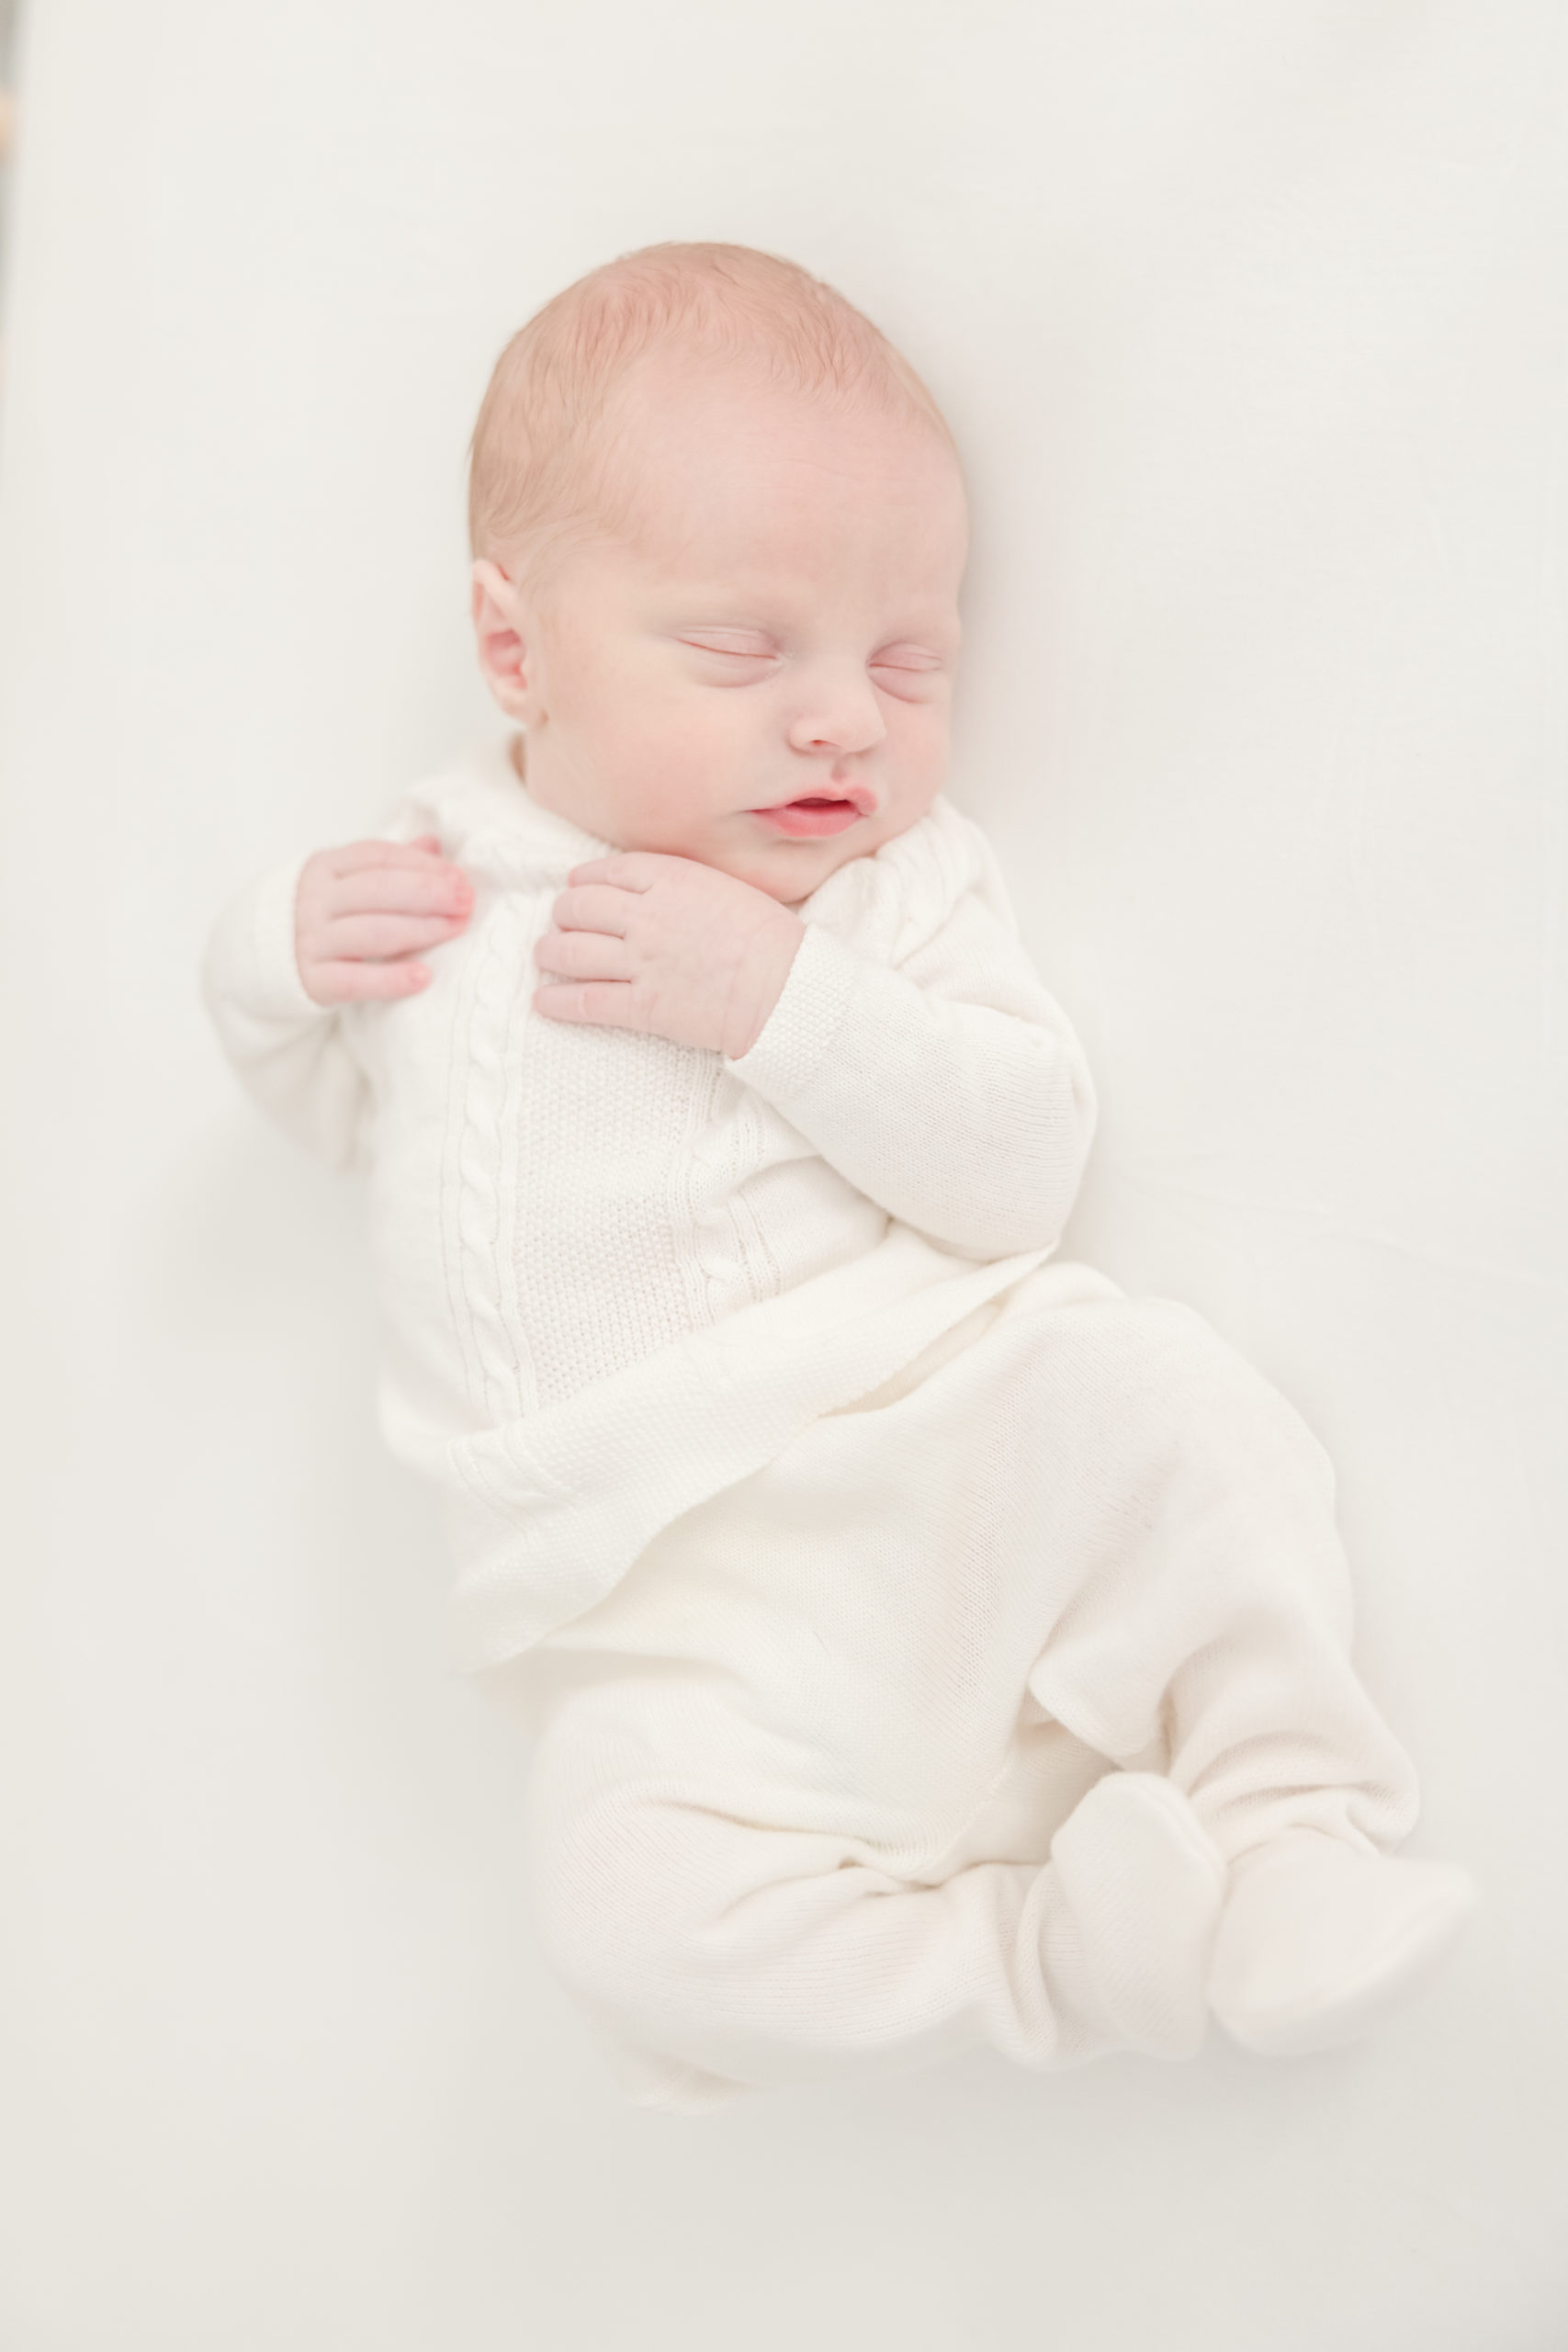 Newborn baby in white sweater